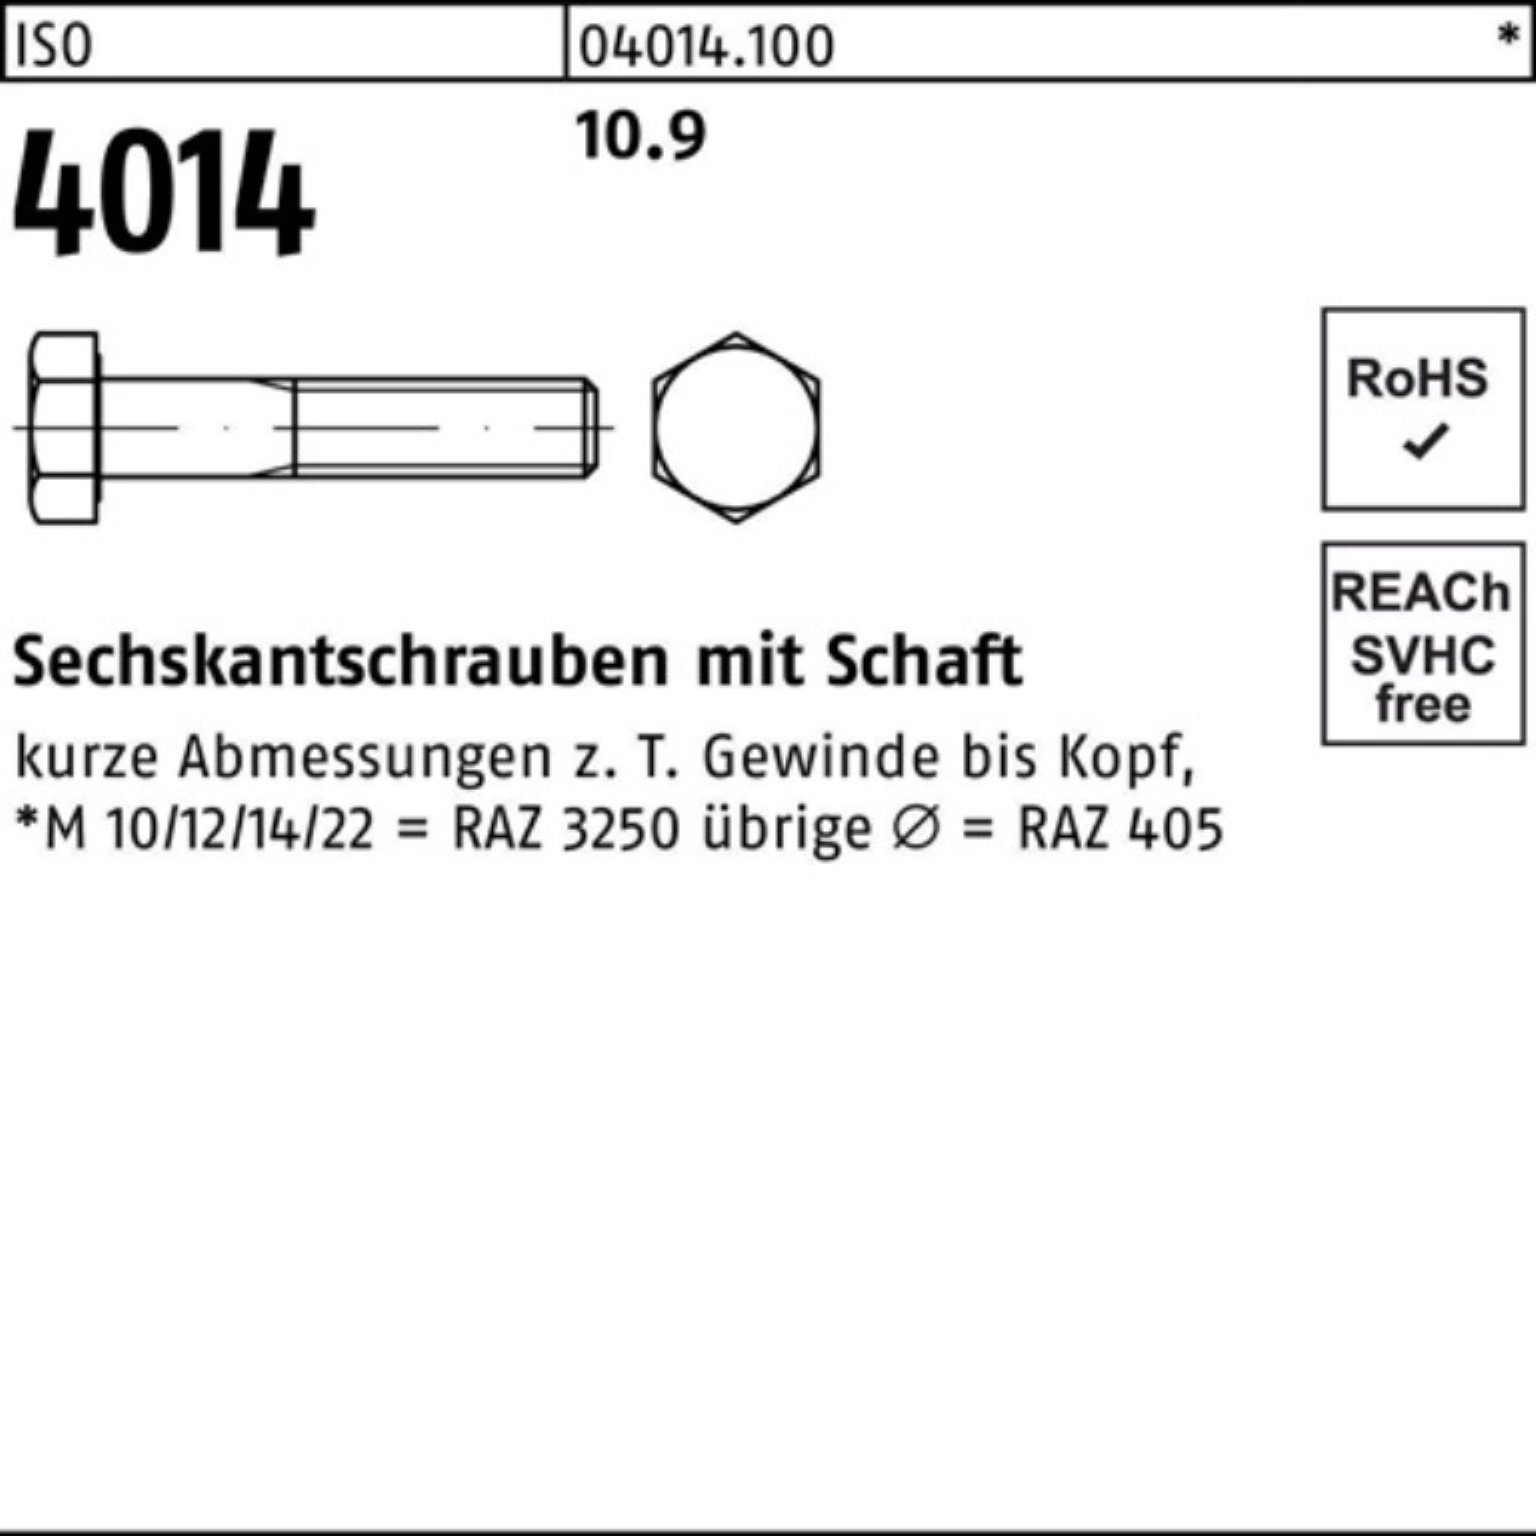 Sechskantschraube 25 I Stück Sechskantschraube 100er Schaft ISO Bufab Pack 10.9 300 M12x 4014